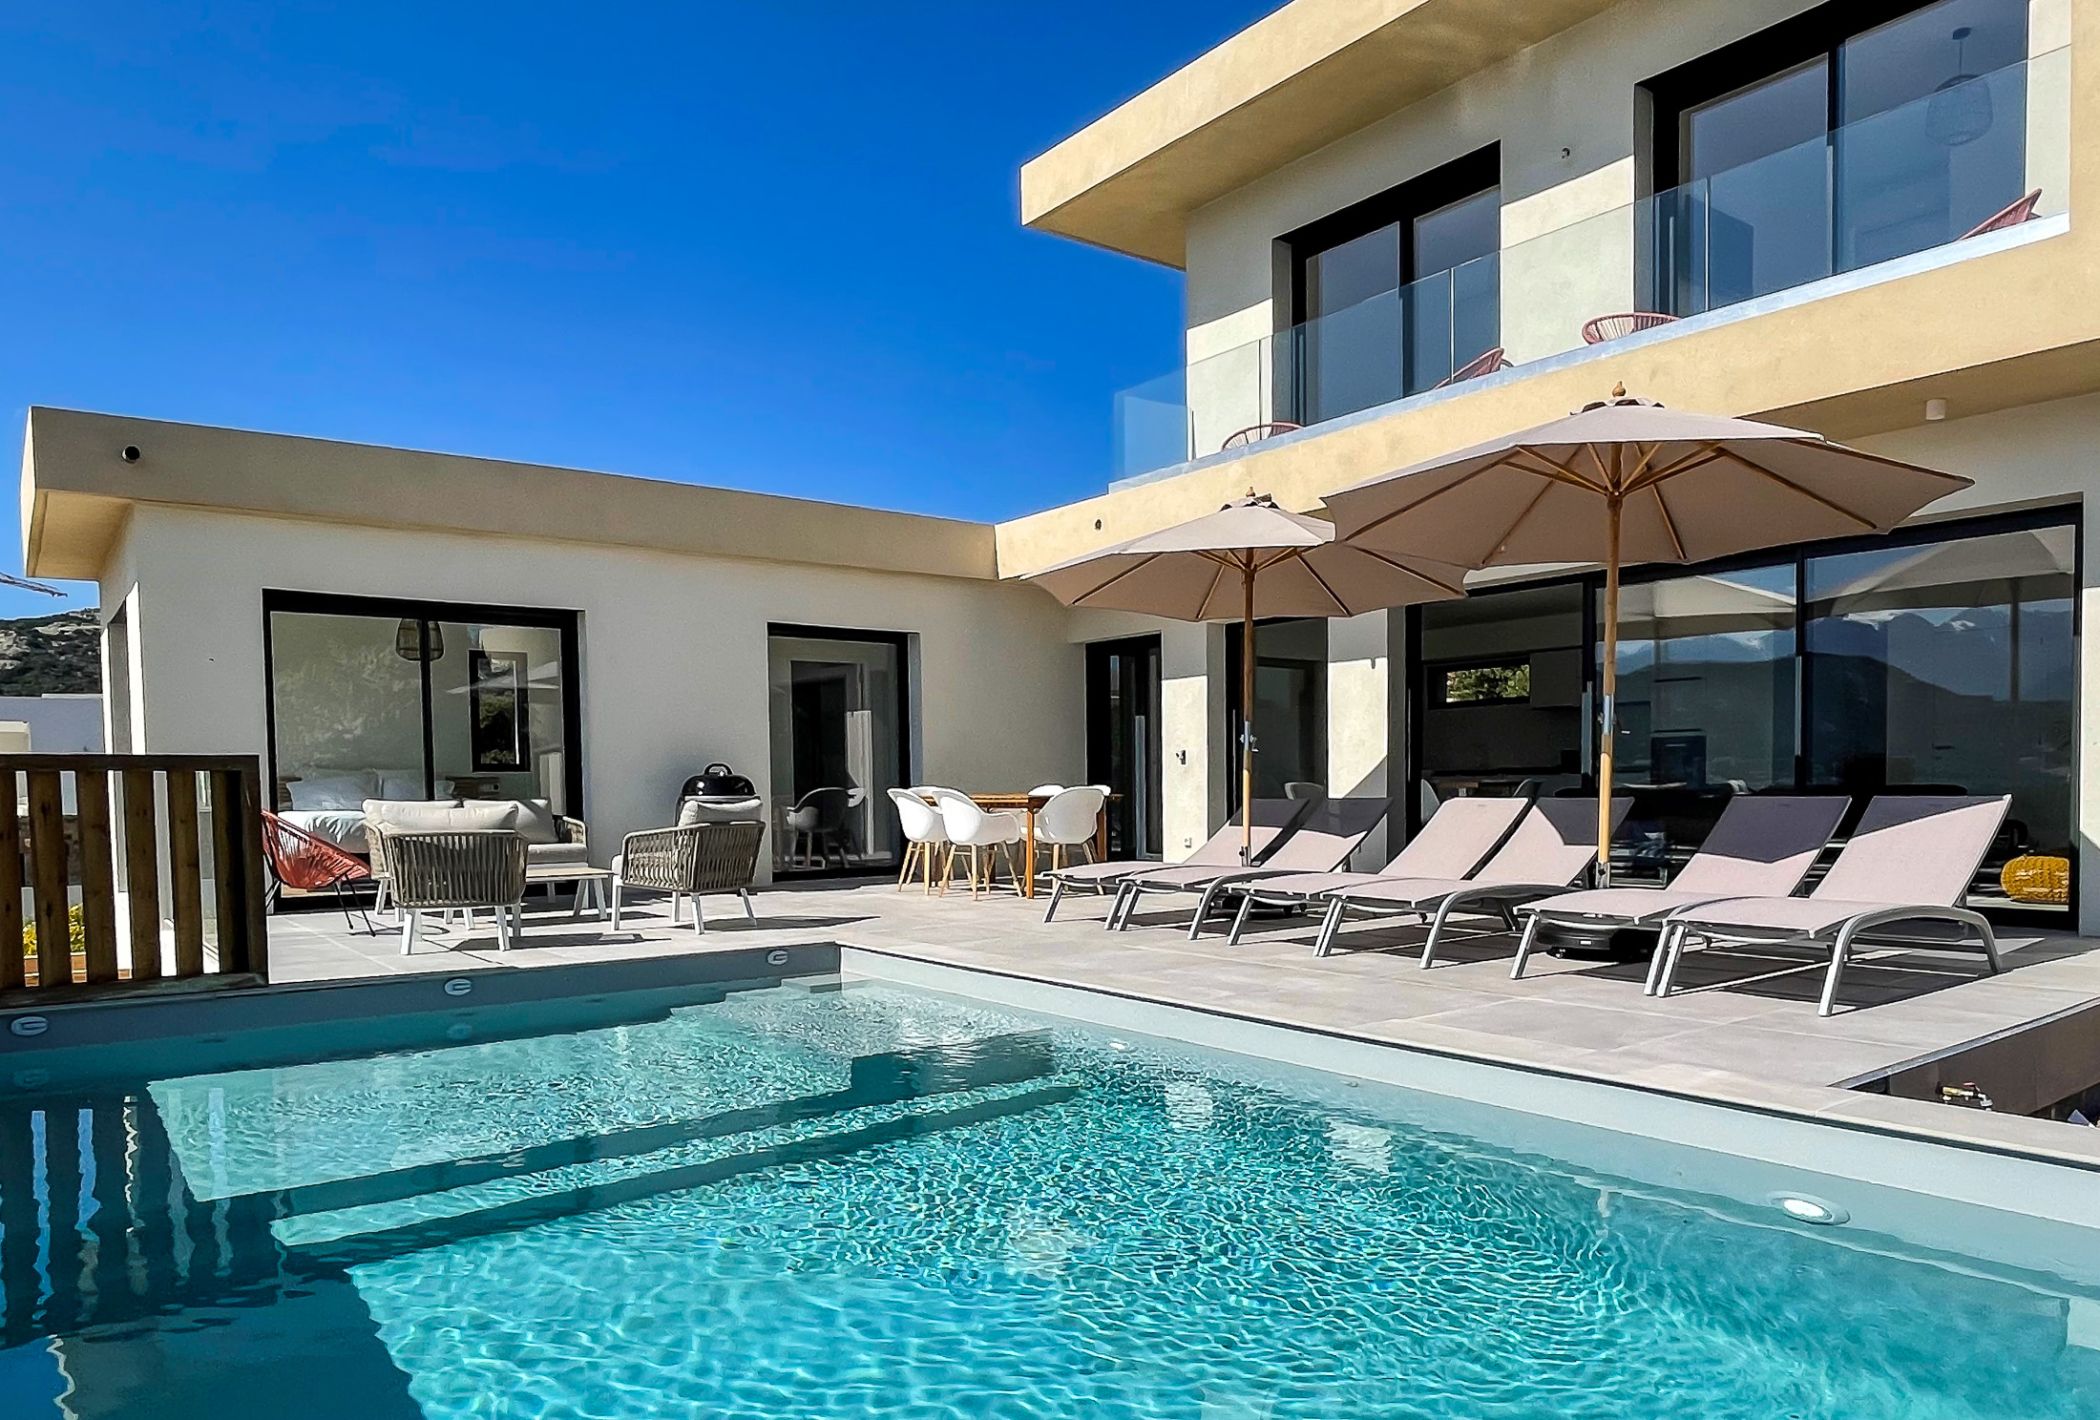 Villa d'architecte neuve de 6 personnes avec piscine chauffée, bains de soleil, salon de jardin.